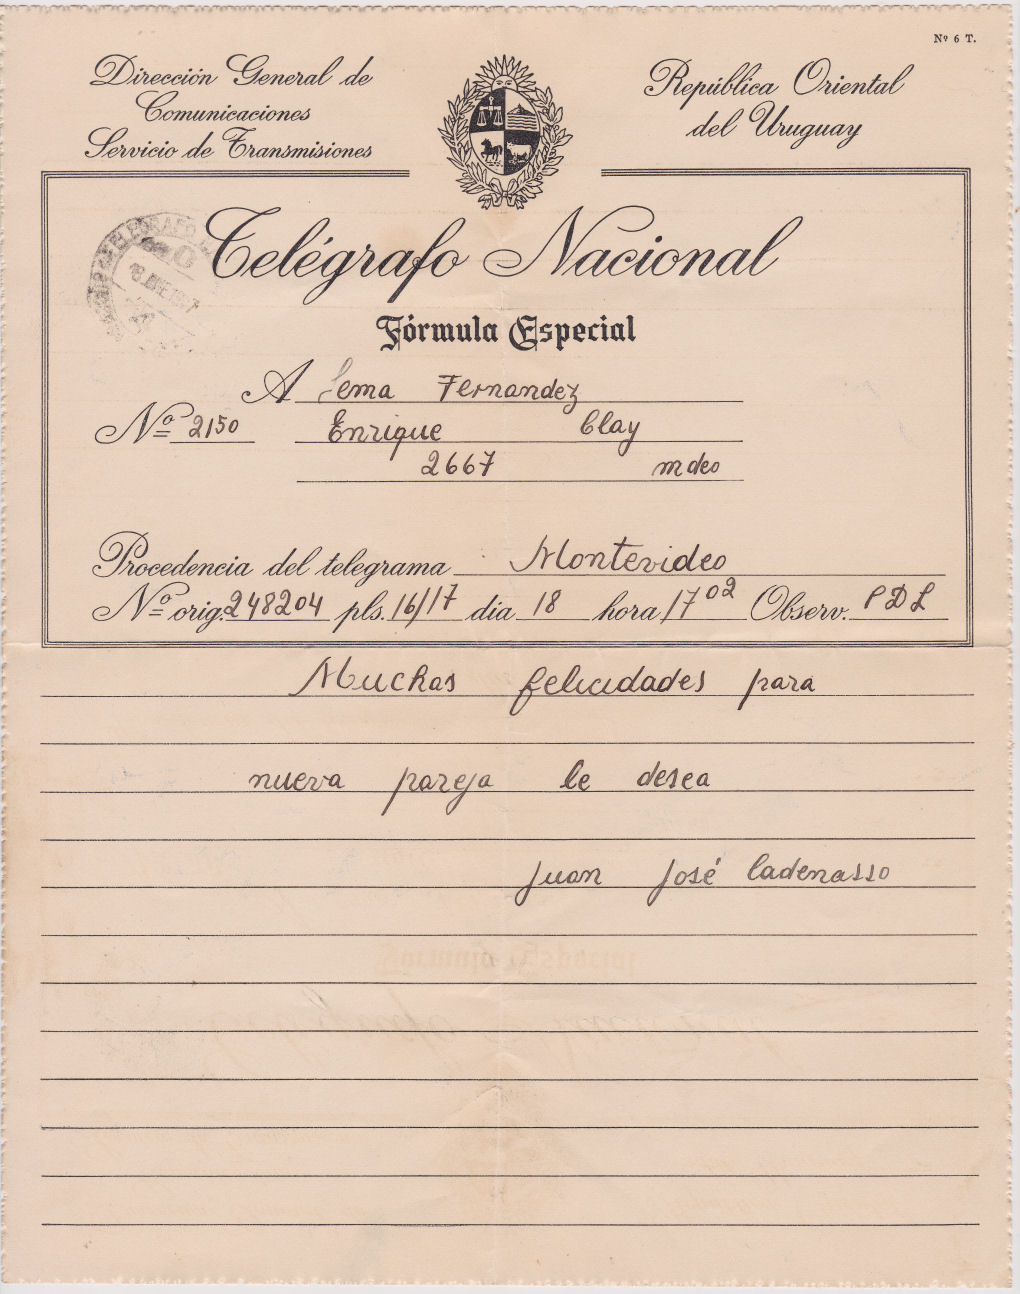 Special Telegram of 18-1-1947